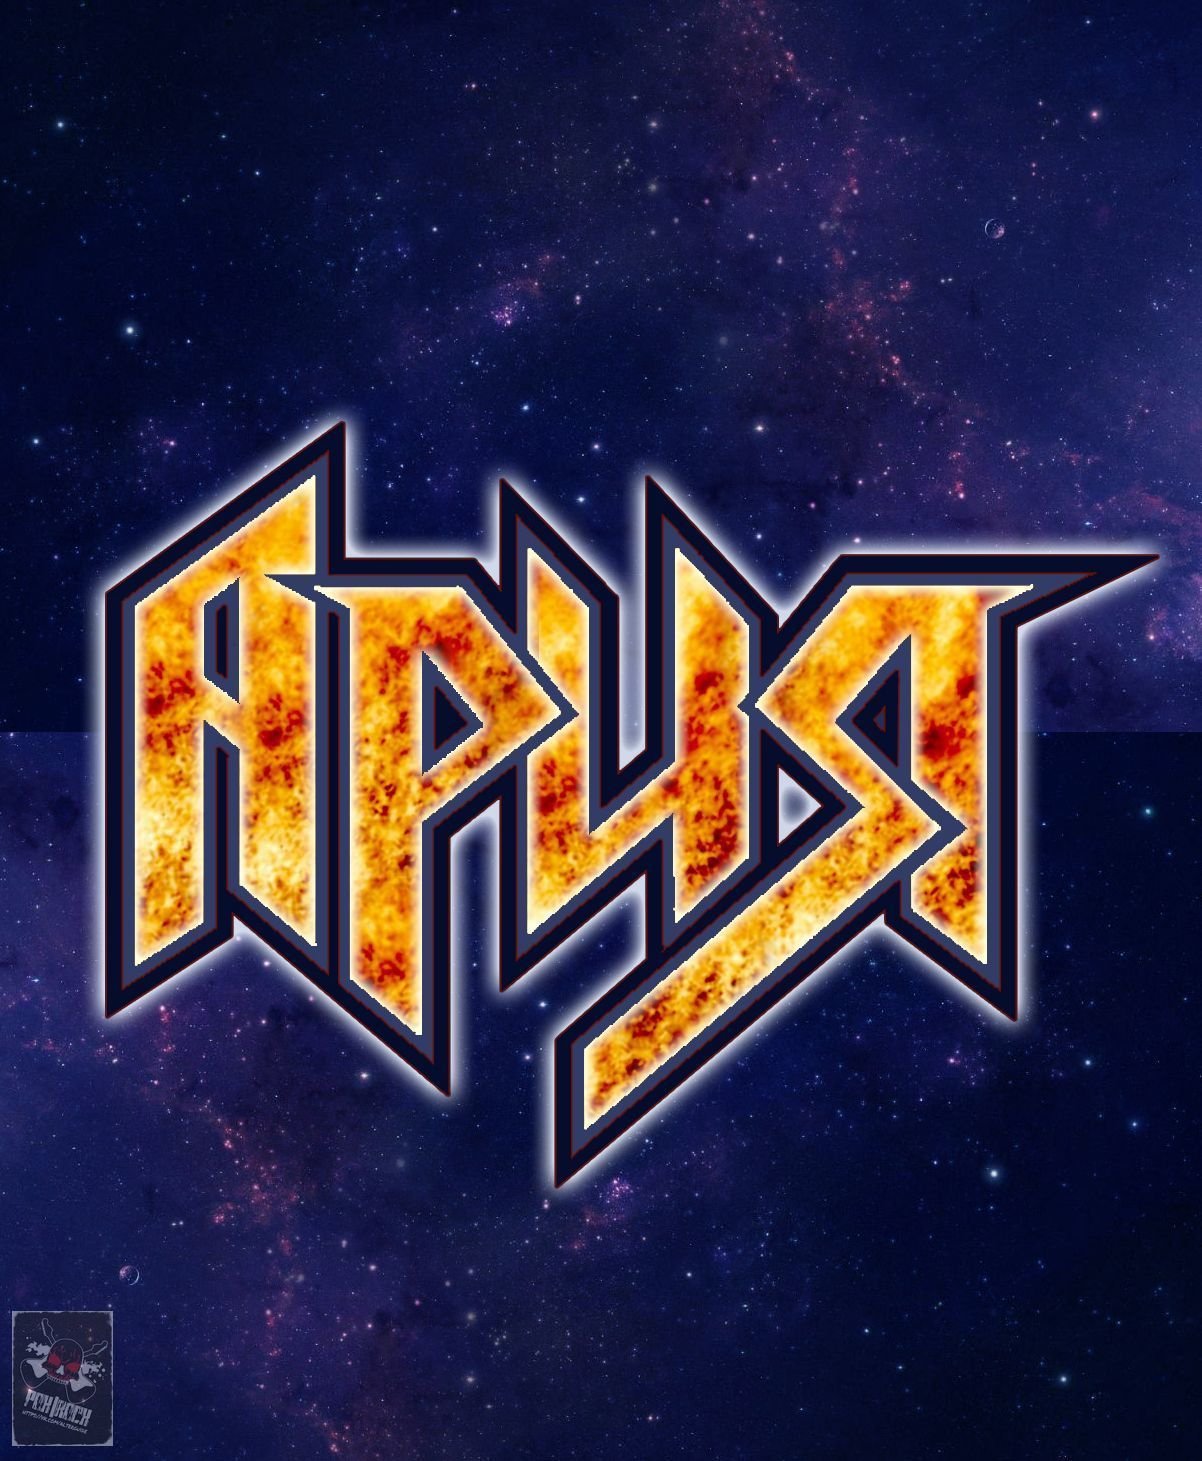 Ария реклама. Ария логотип группы. Группа Ария лейбл. Логотип рок группы Ария. Группа Ария лого.